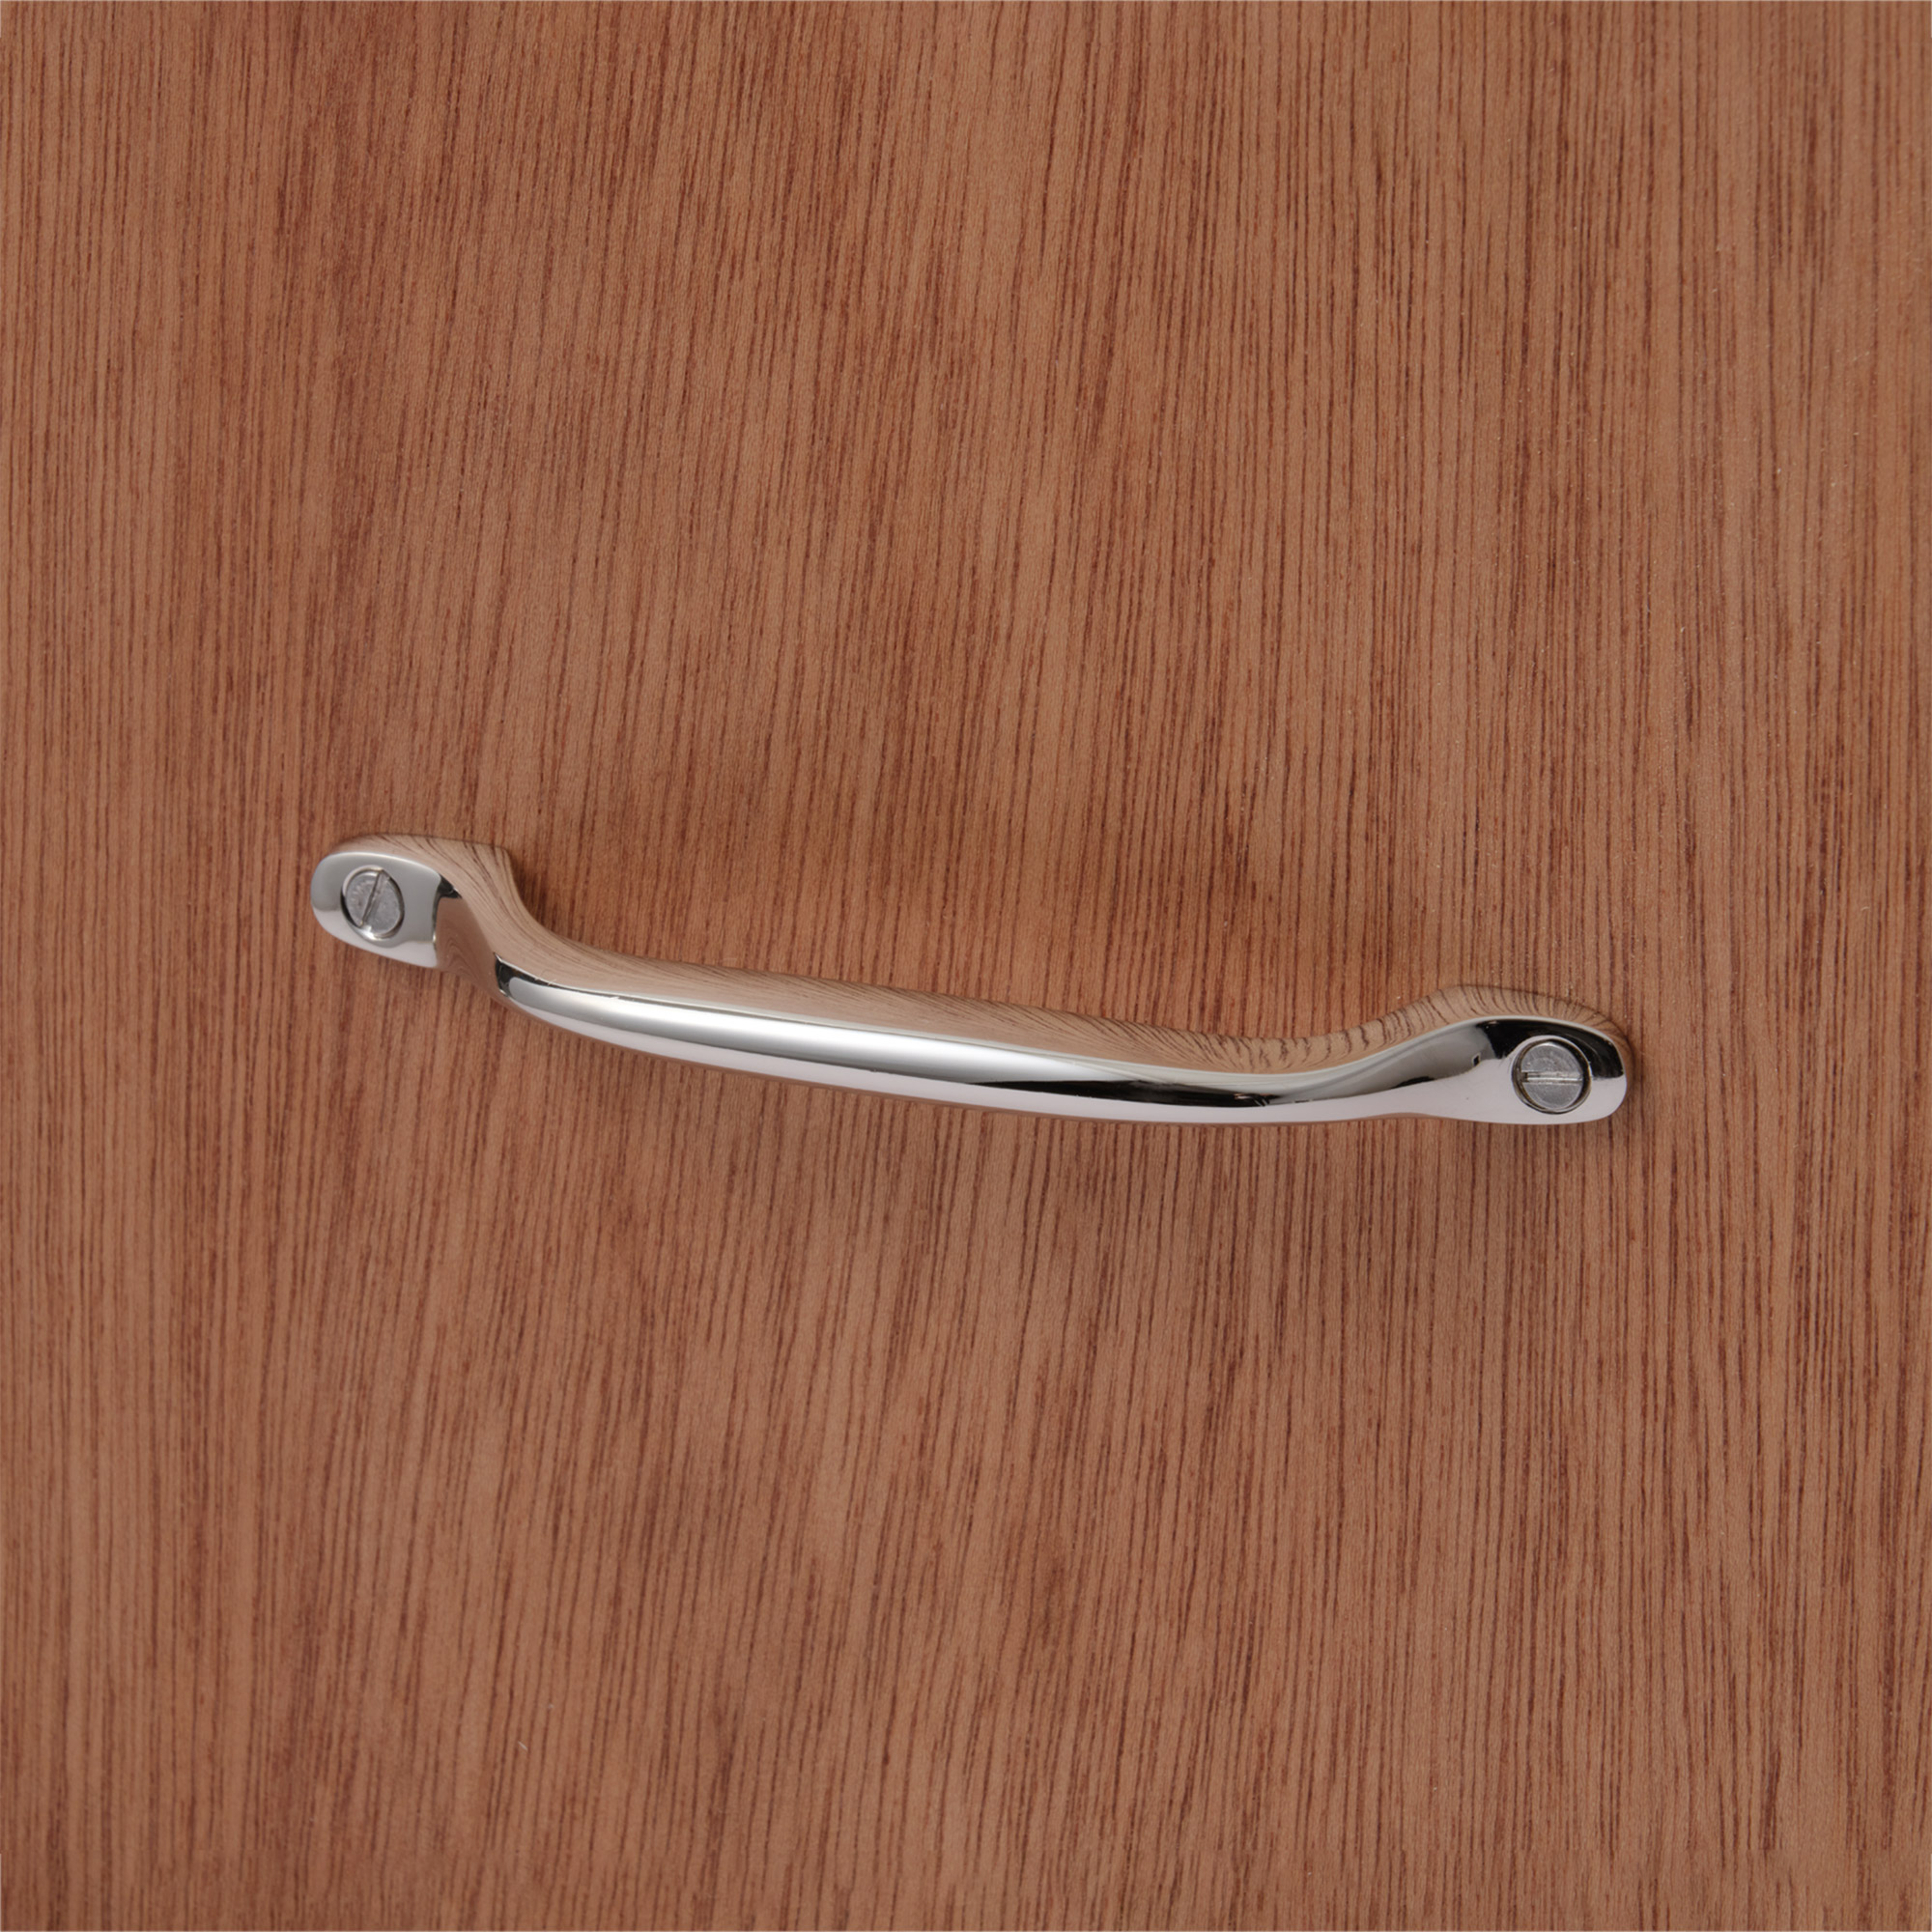 鋳物キッチン把手 ハンドル クローム PS-HD018-18-G141 ラワン材と合わせたイメージ